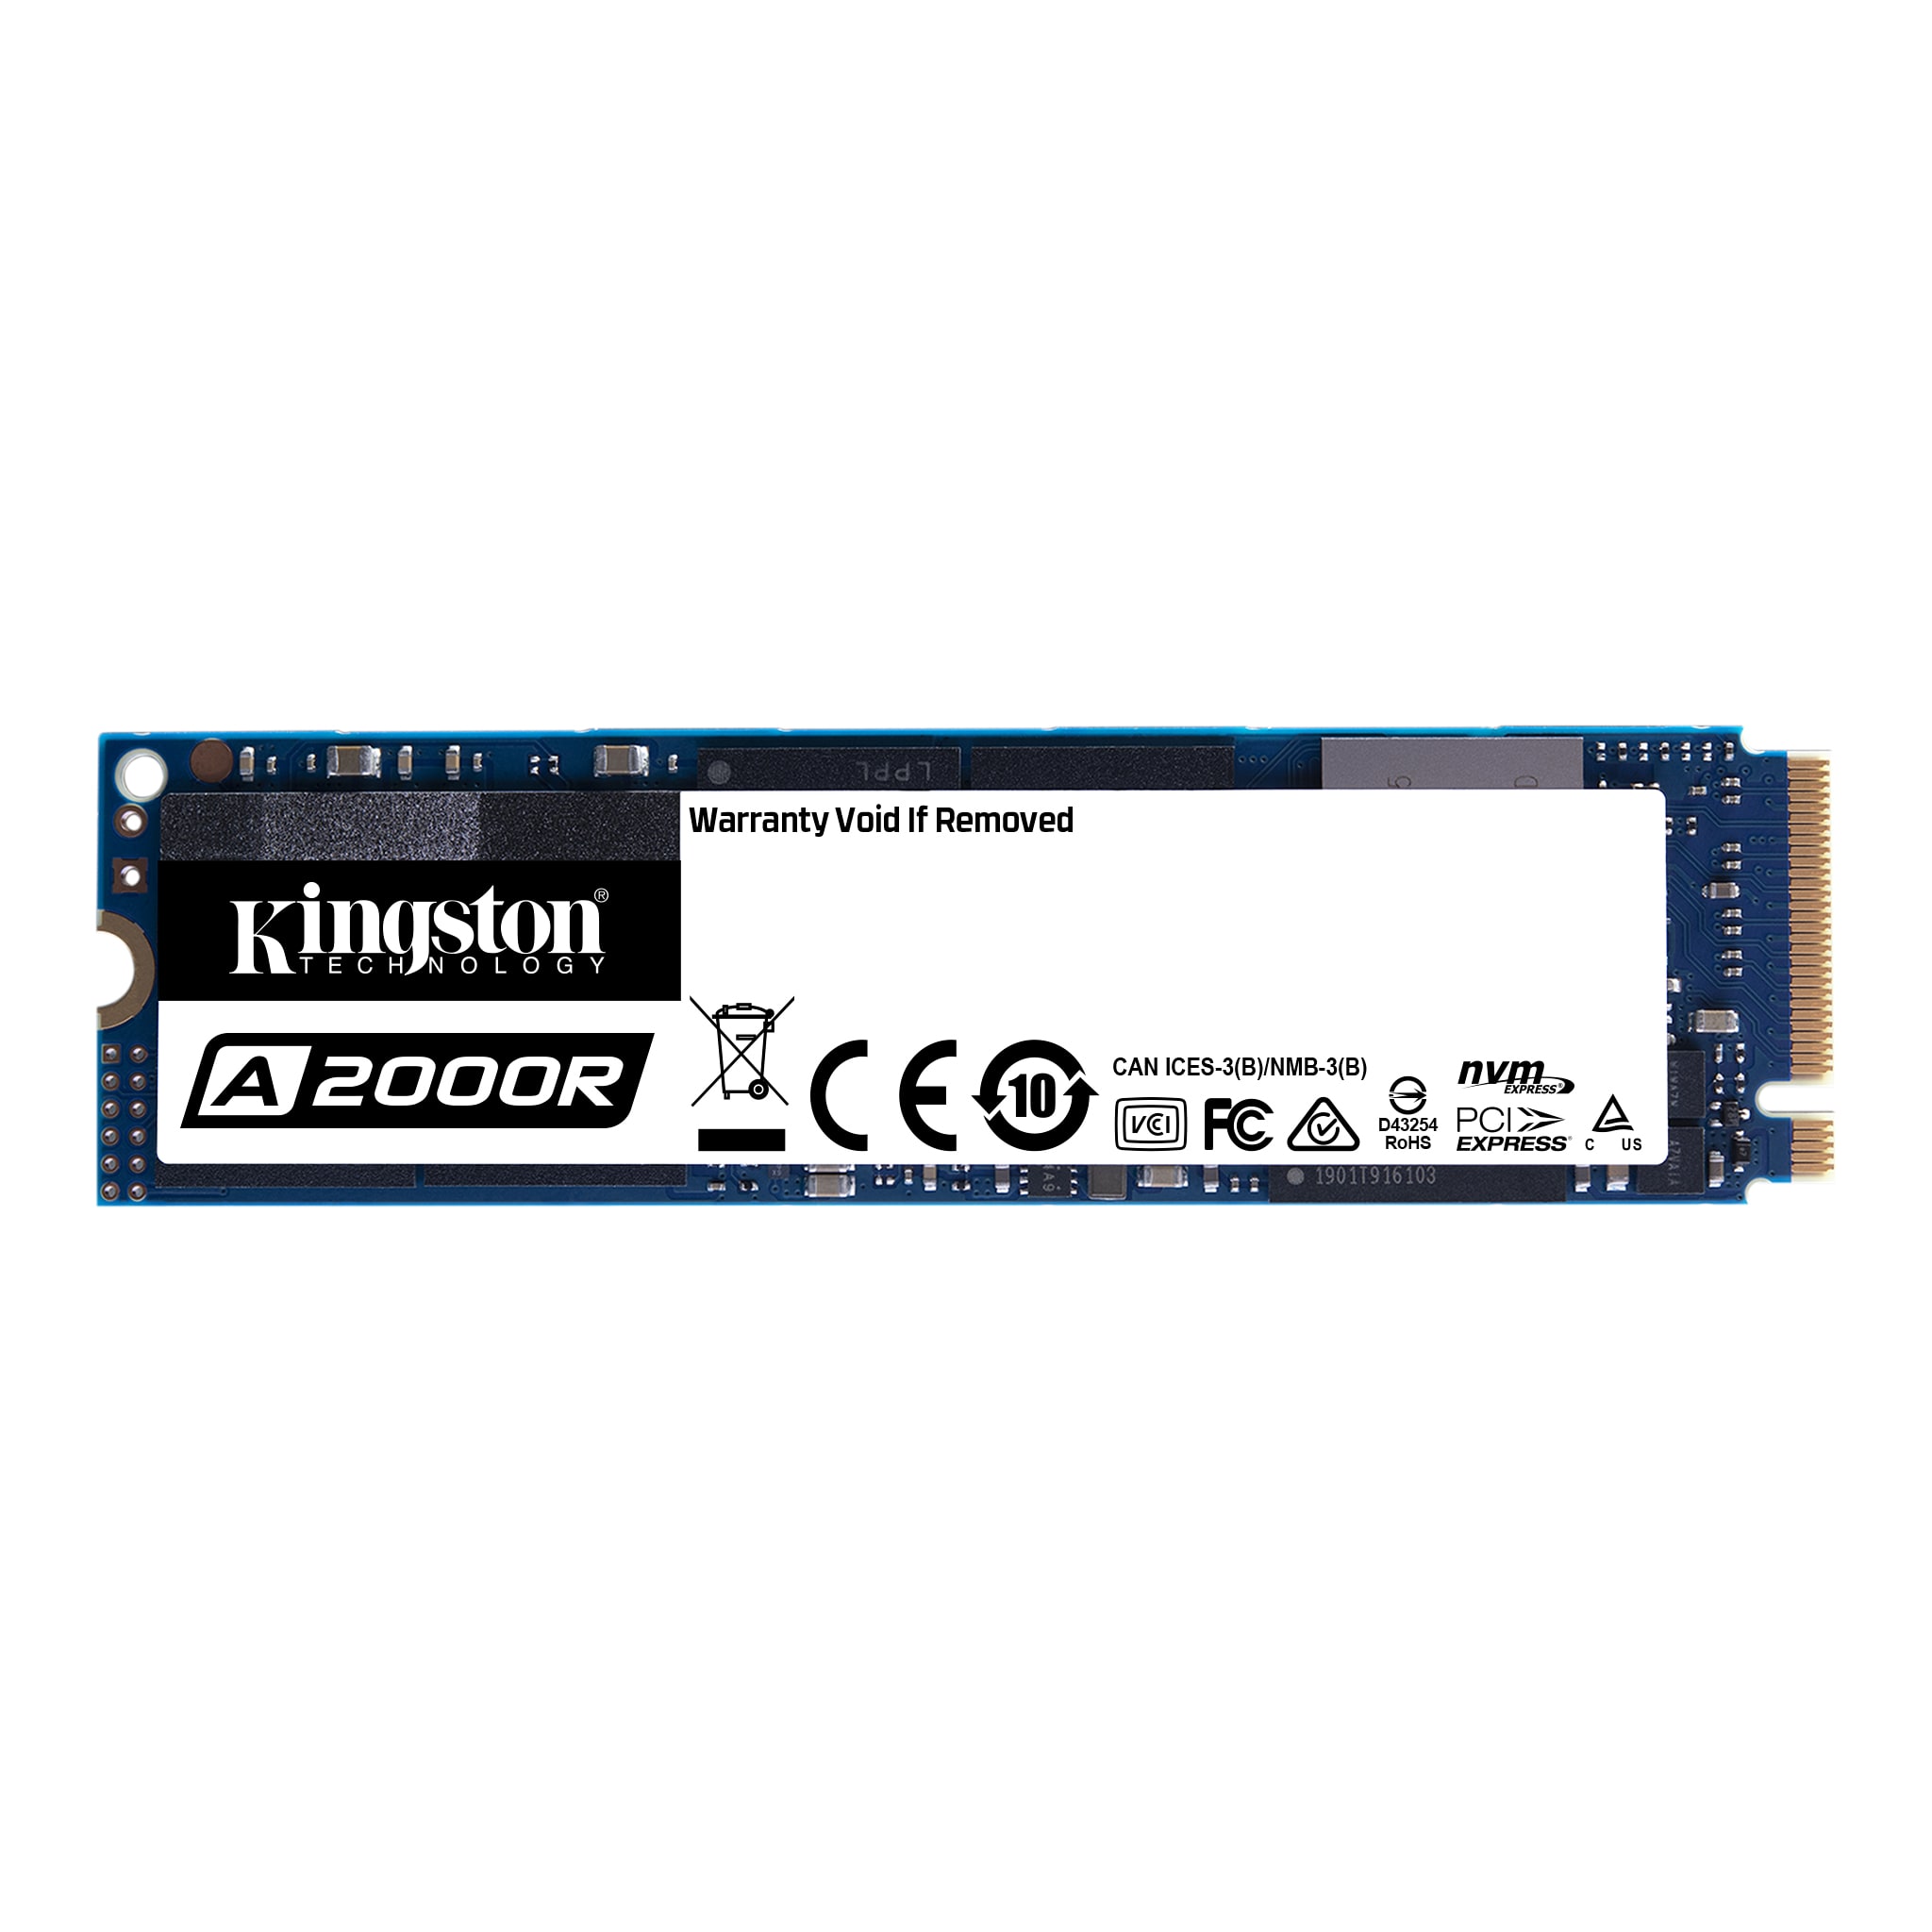 A2000 NVMe PCIe SSD – 250GB-1TB - Kingston Technology